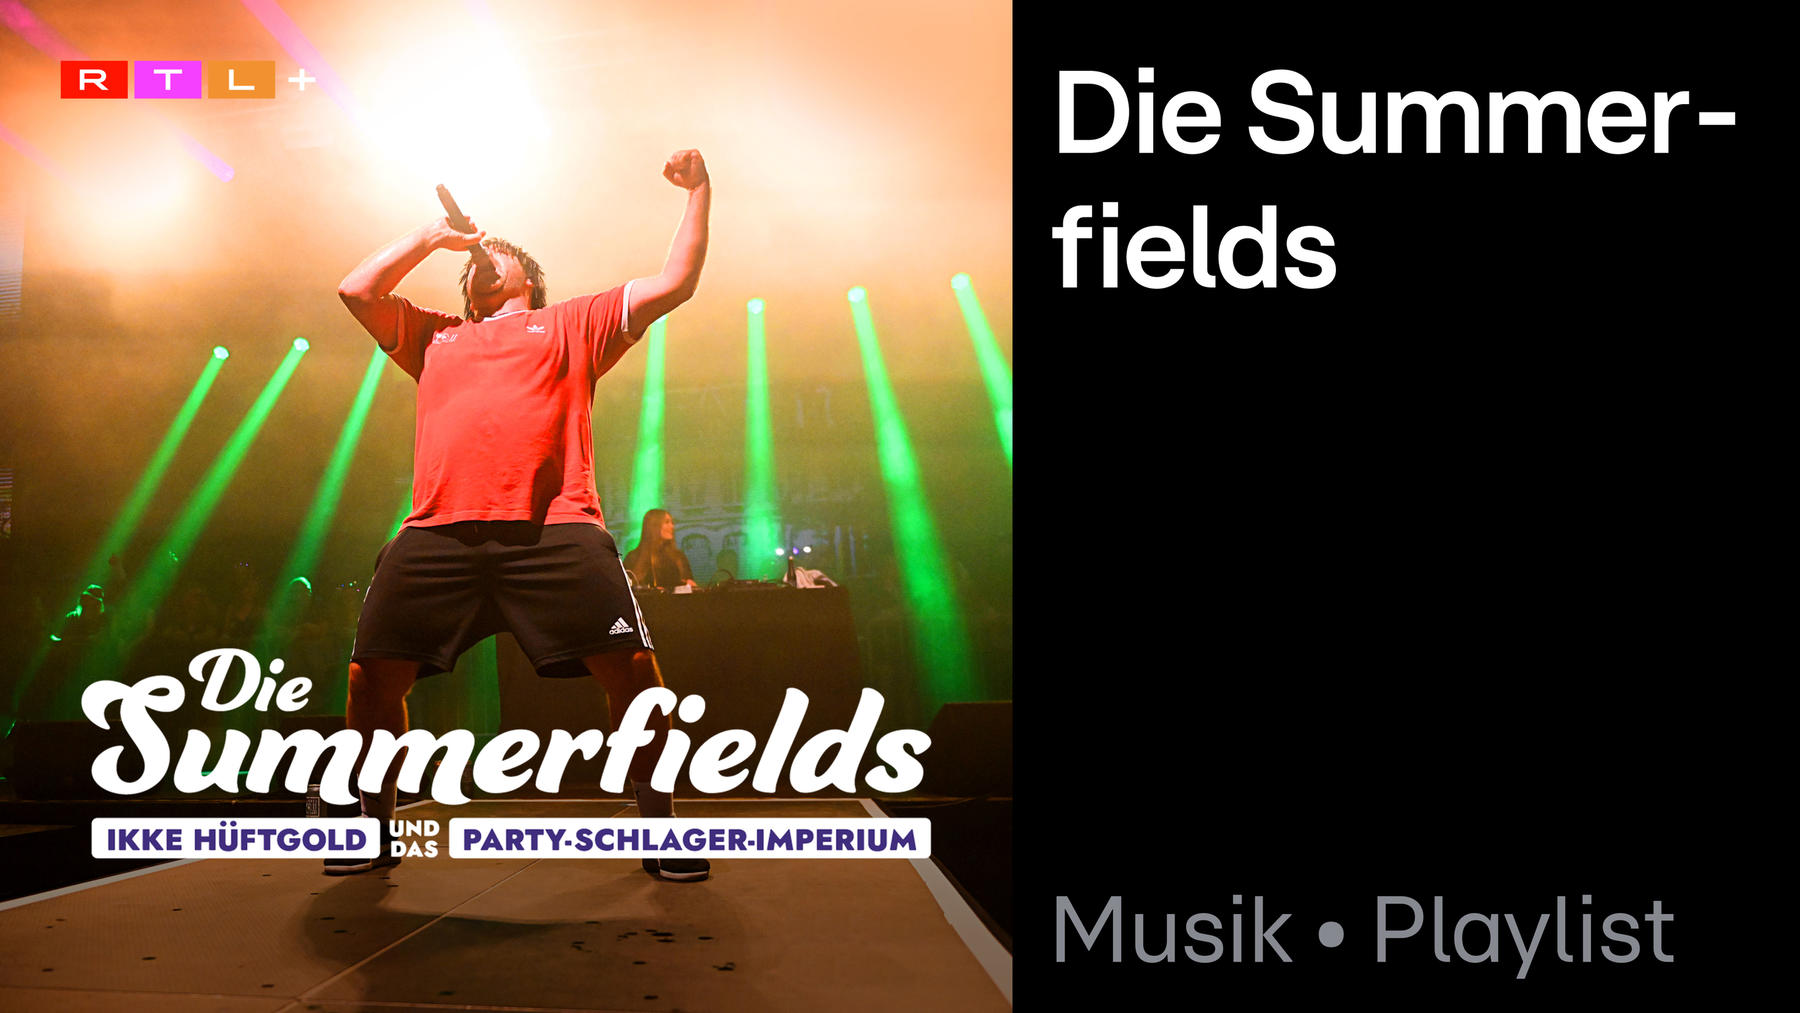 Playlist: Die Summerfields Playlist